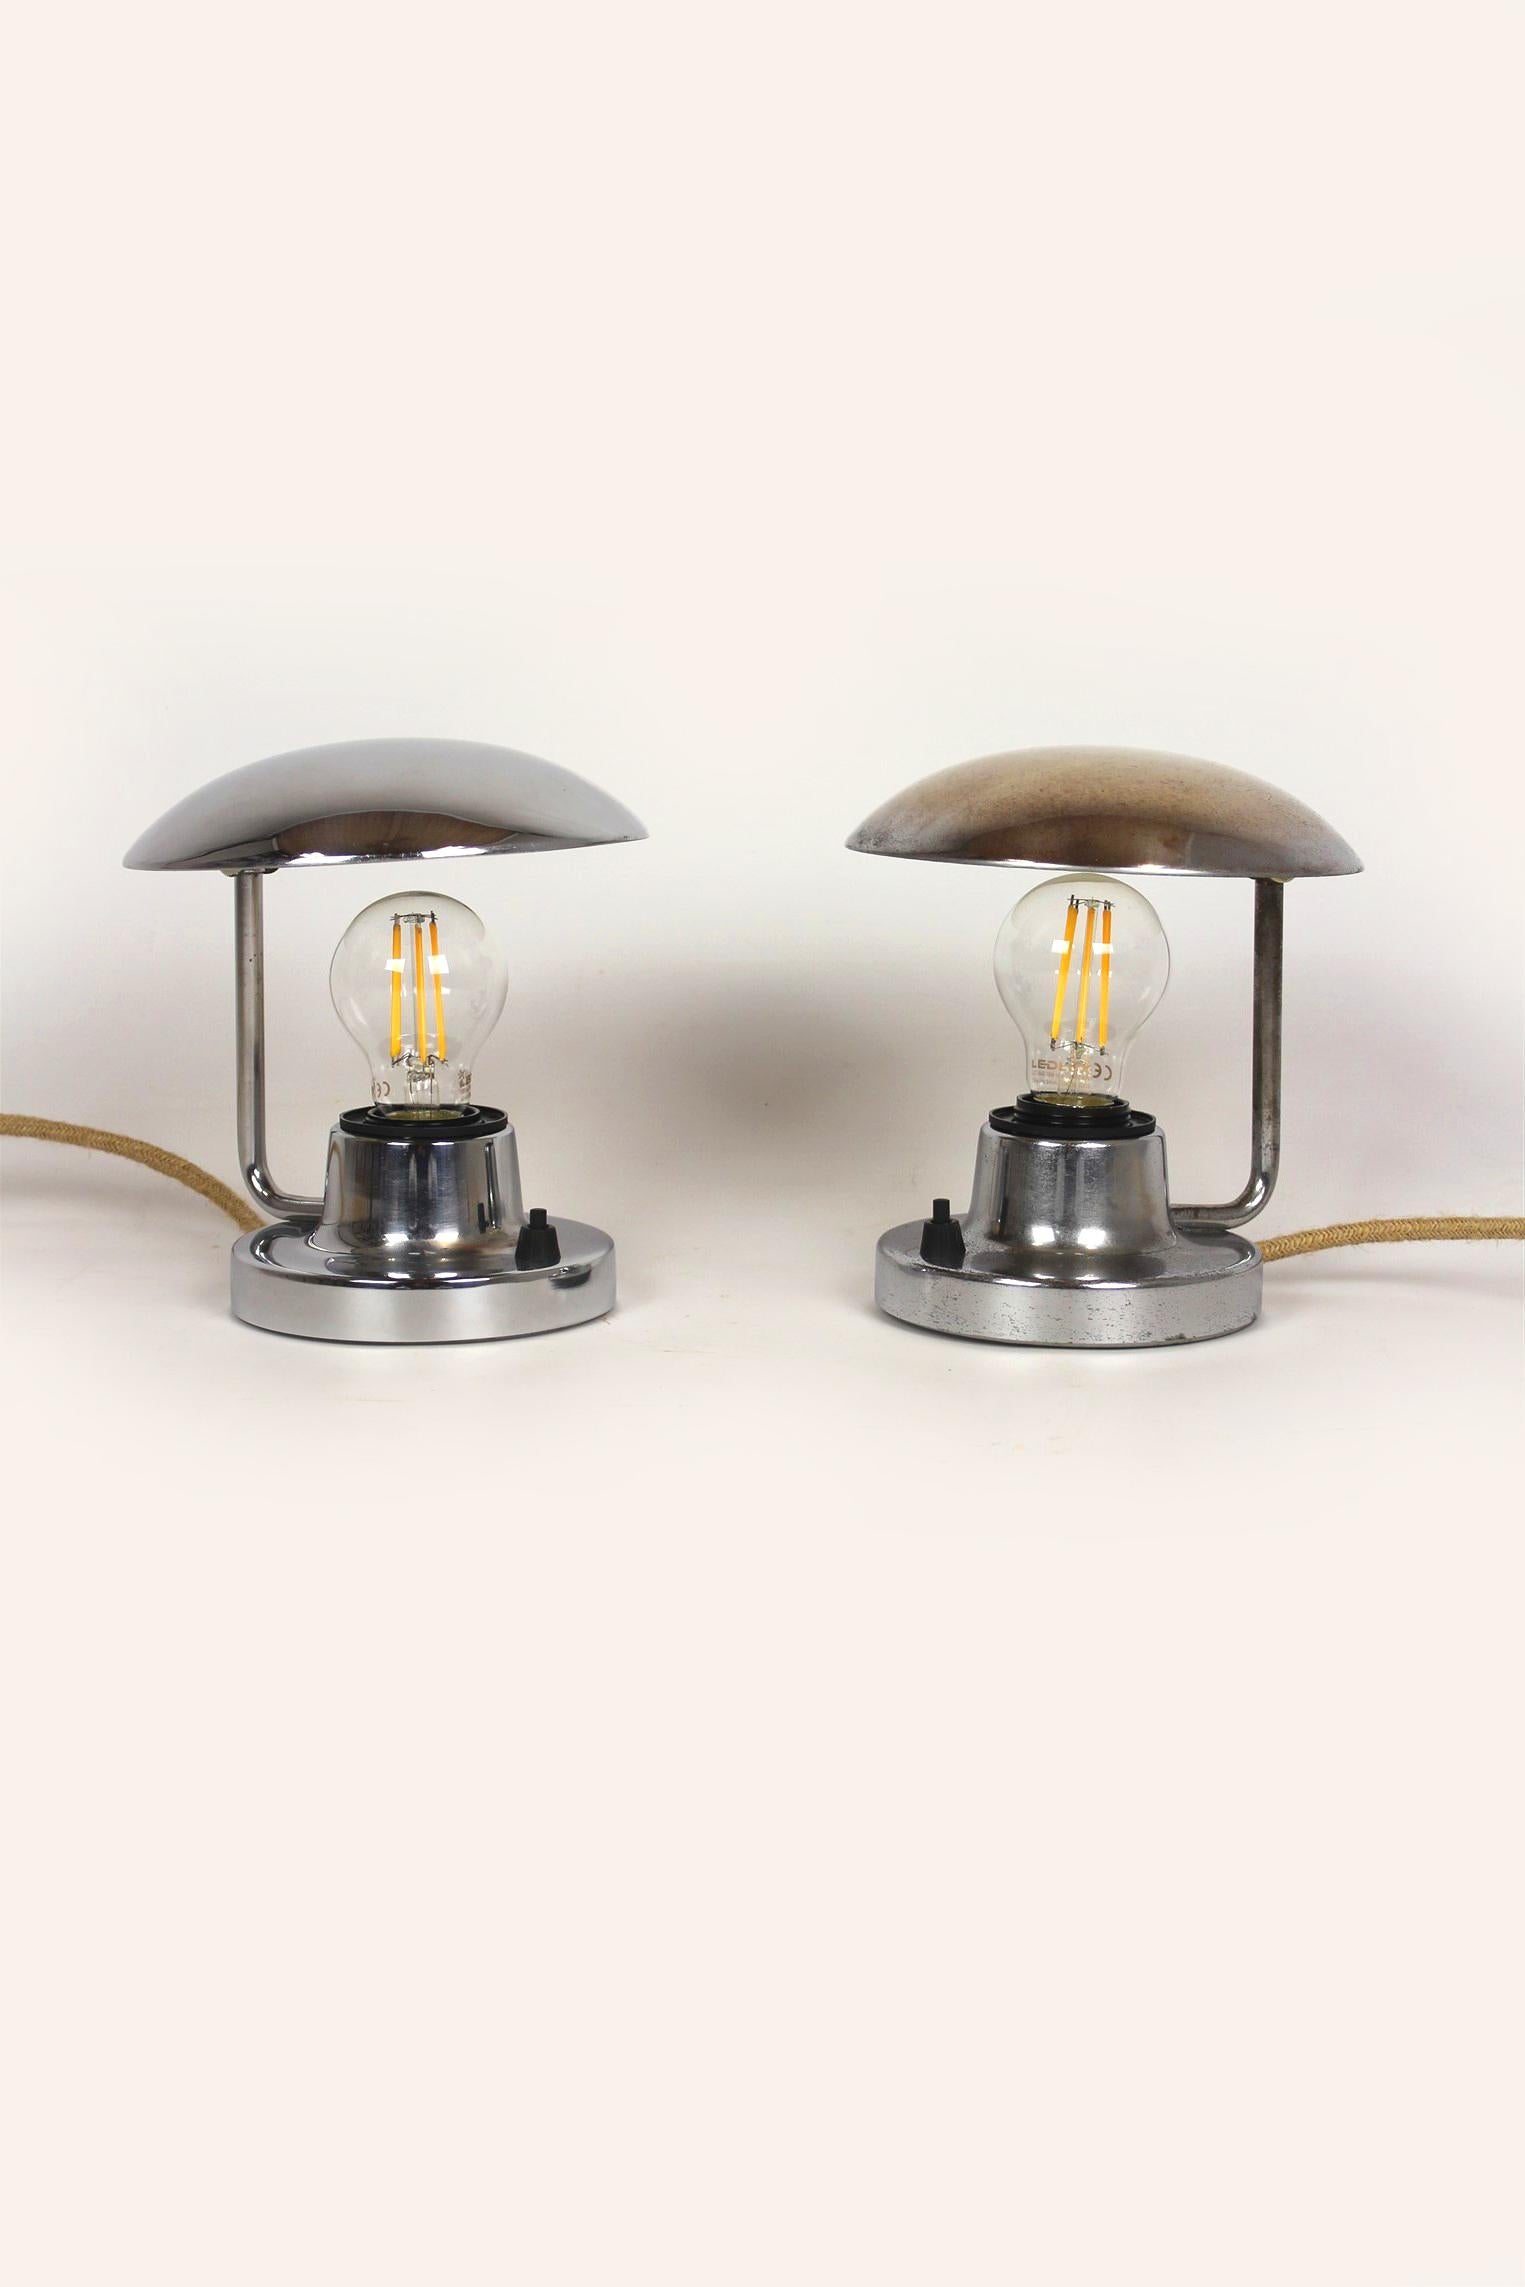 Diese verchromten Tischlampen (Typ 1195) im Bauhaus-Stil wurden von Napako in den 1940er Jahren in der Tschechischen Republik hergestellt. Die Lampen haben neue elektrische Installationen und Jutekabel im Retro-Stil. Voll funktionsfähig, mit den auf